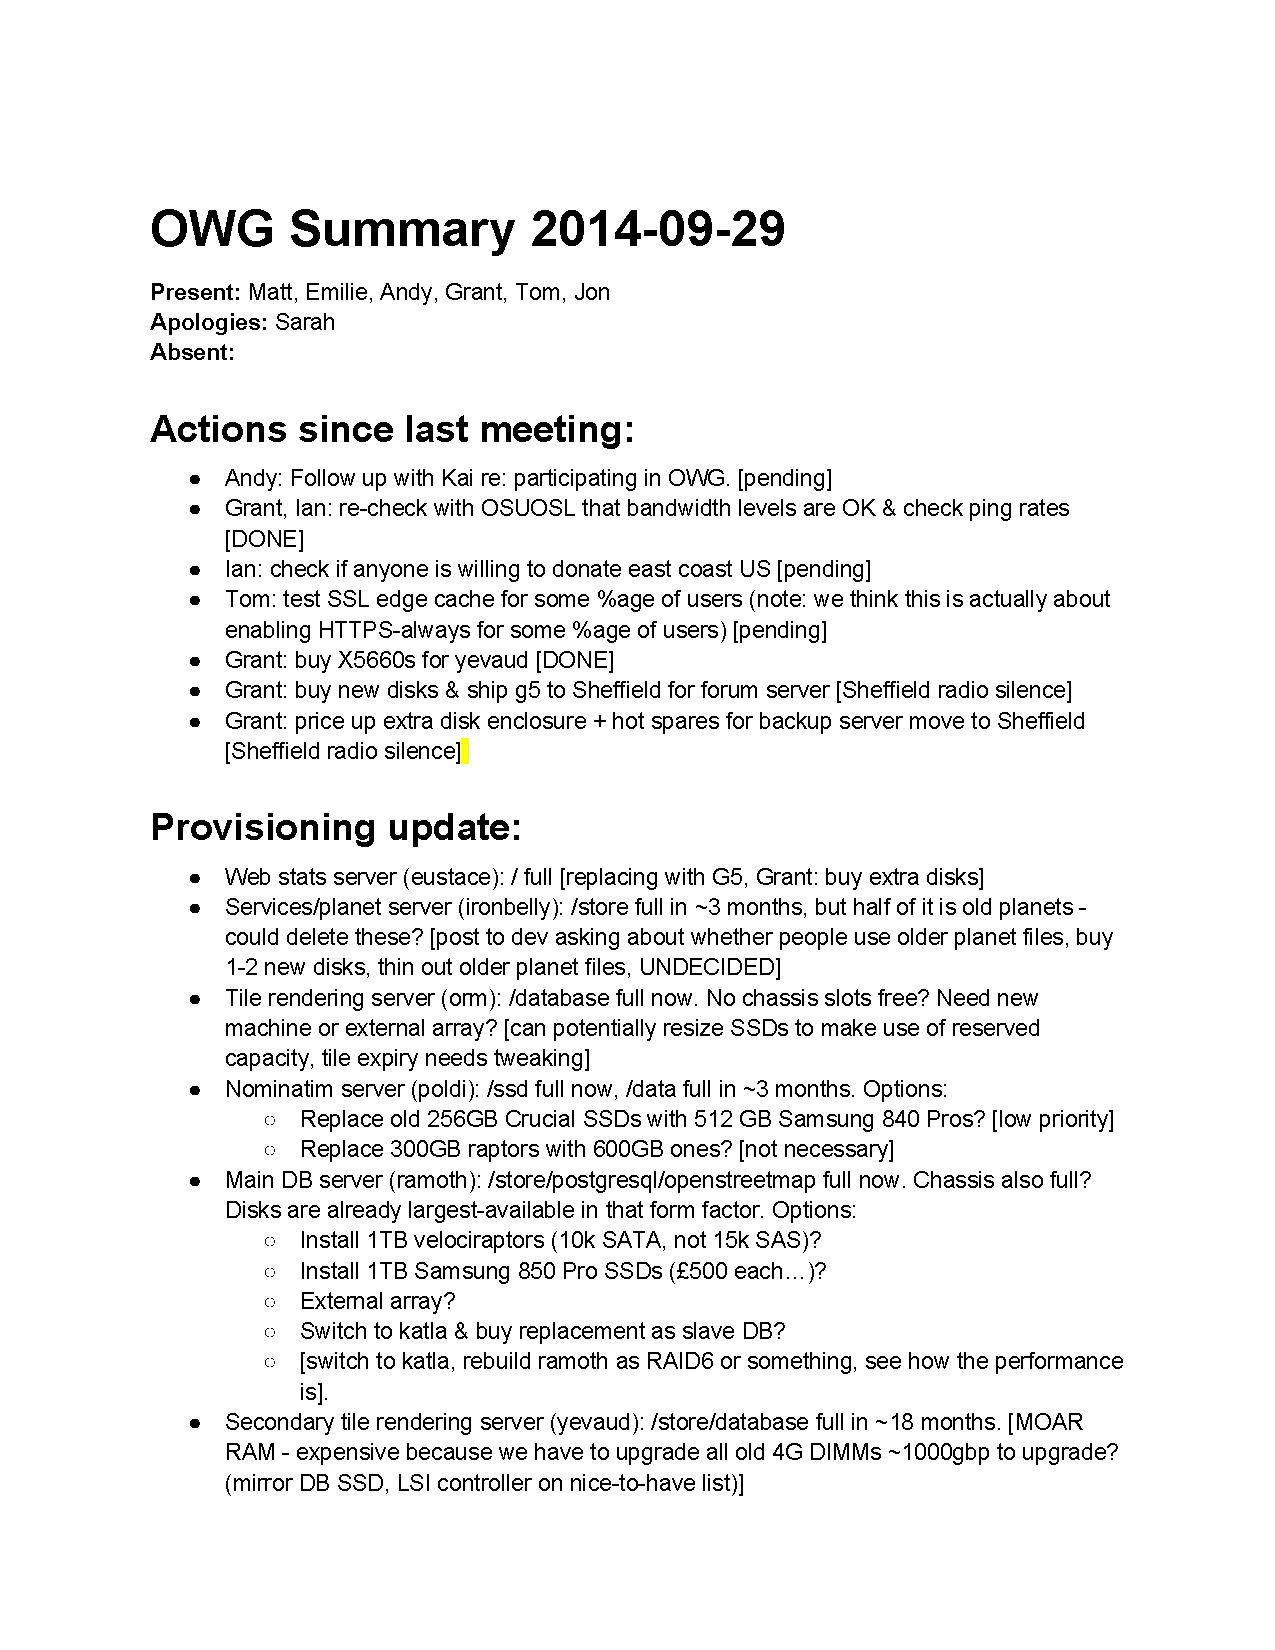 OWG Summary 2014-09-29.pdf